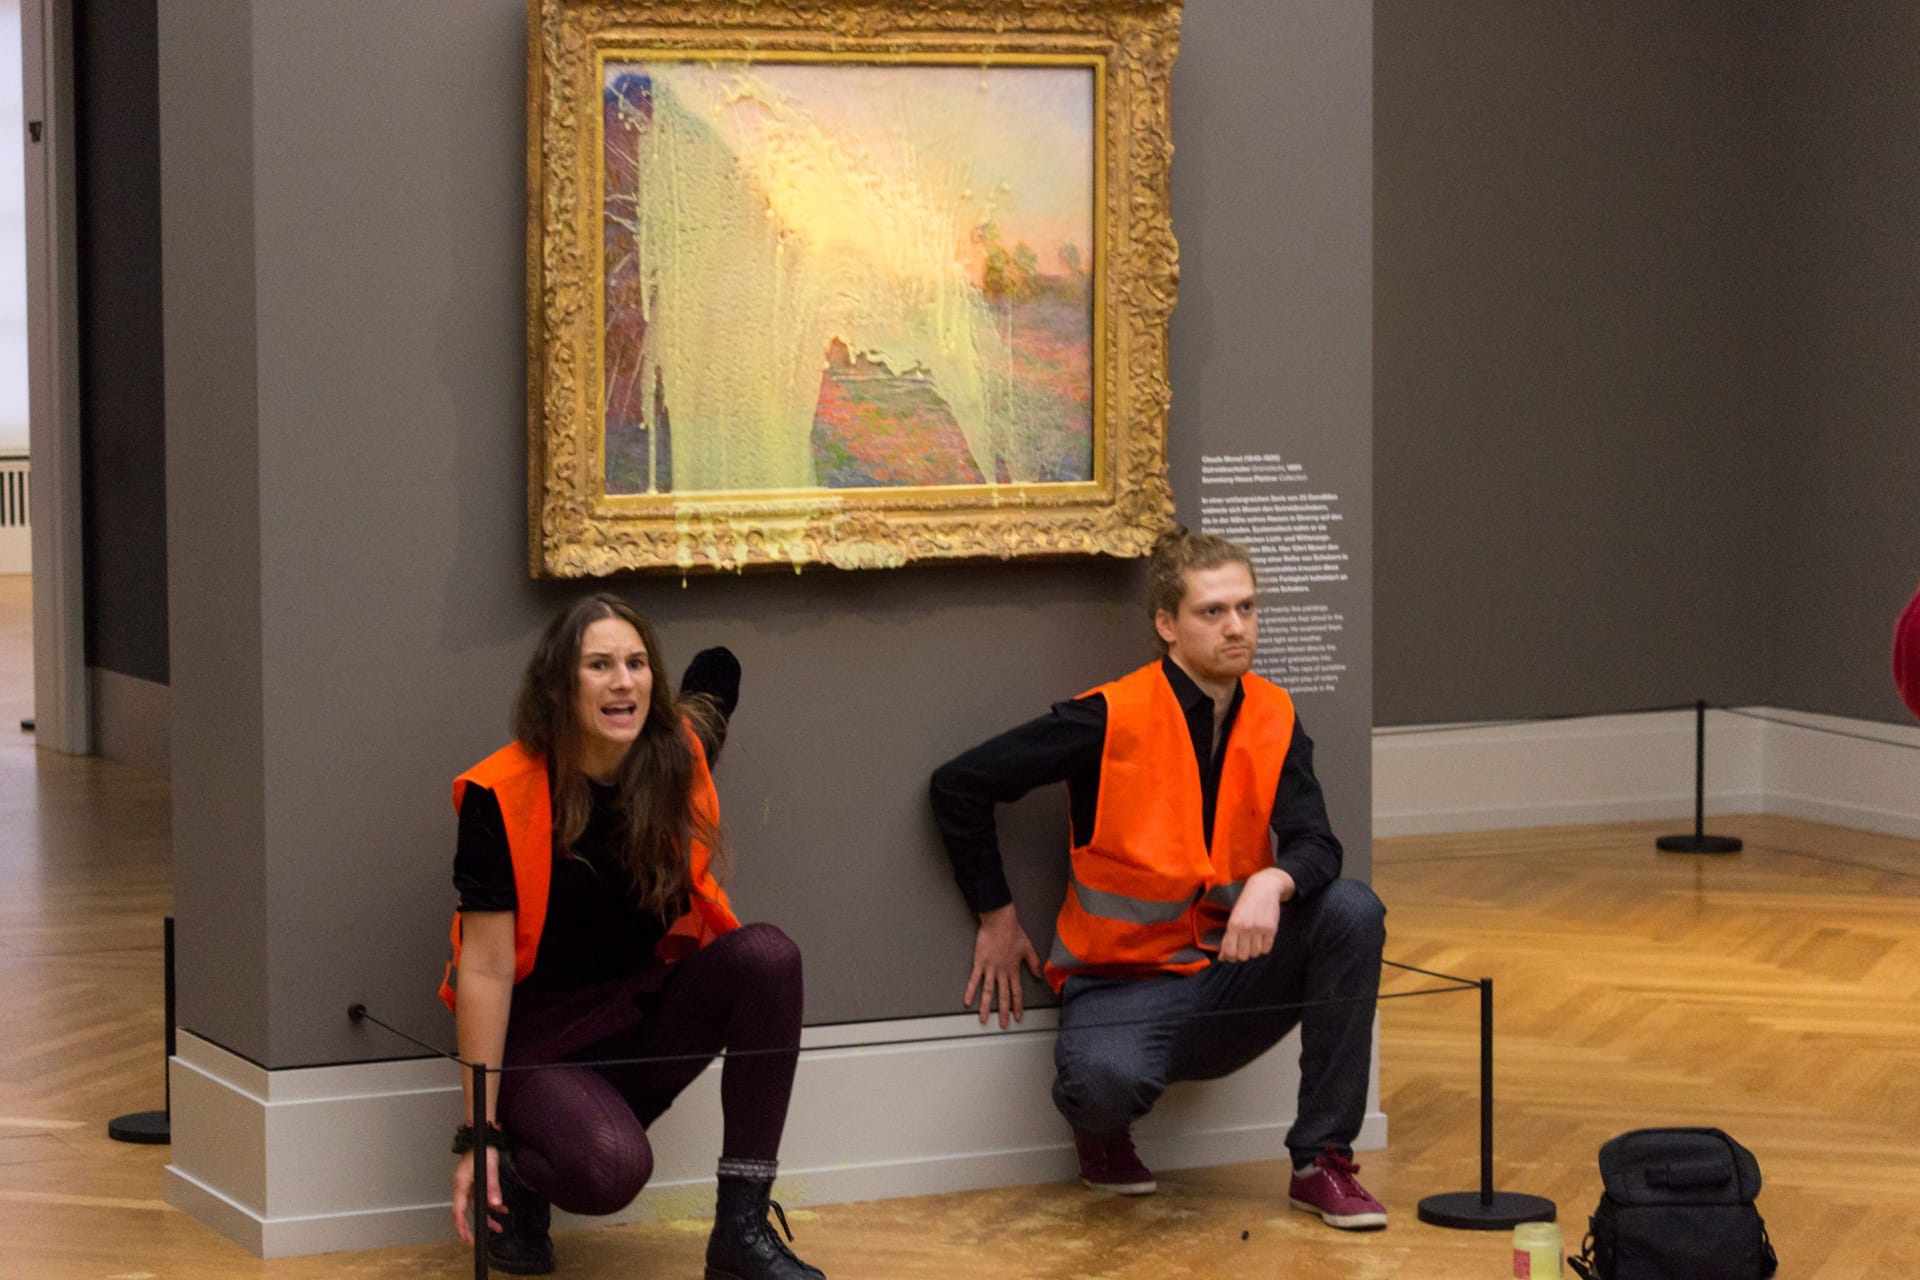 Protestaktion im Museum Barberini in Potsdam: Claude Monets Gemälde "Les Meules" ist mehr als 111 Millionen Euro wert. Bei der Aktion von "Letzte Generation" bewarrfen die Aktivisten das Gemälde mit Kartoffelbrei. Anschließend klebten sie sich fest. Das Museum blieb eine Woche geschlossen.